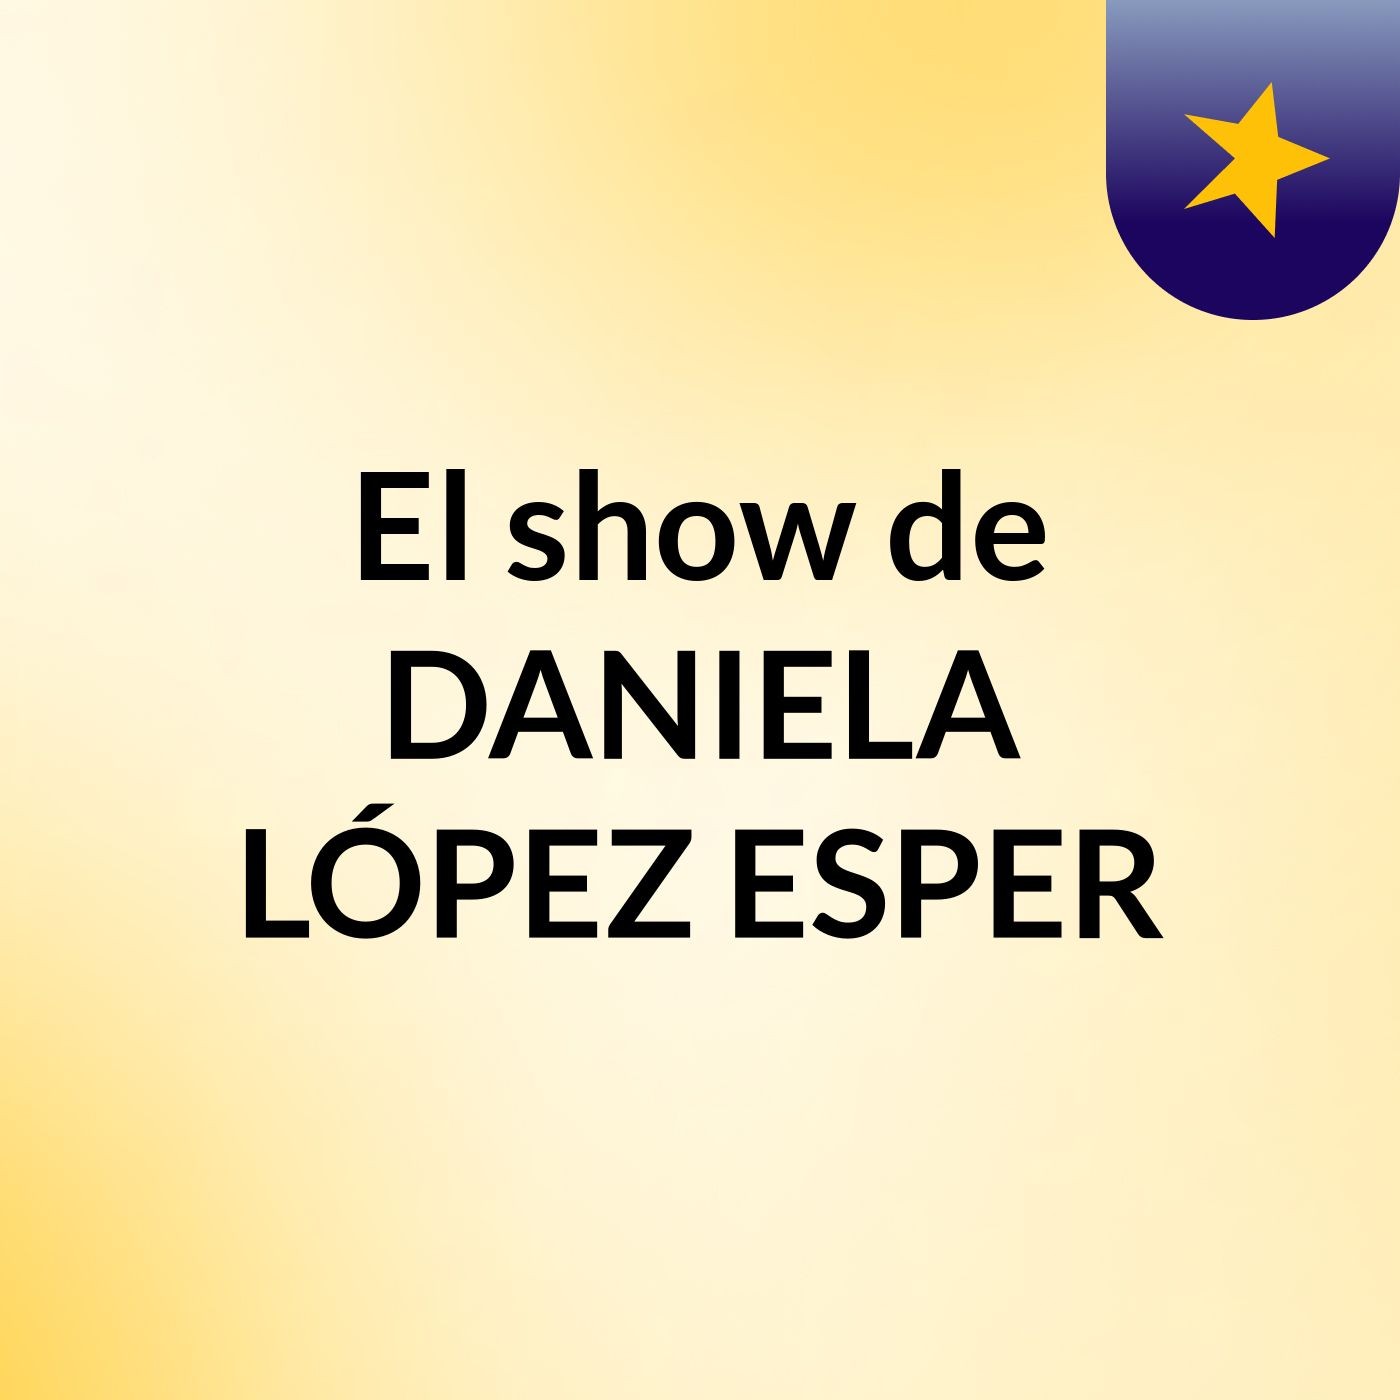 Episodio 2 - El show de DANIELA LÓPEZ ESPER